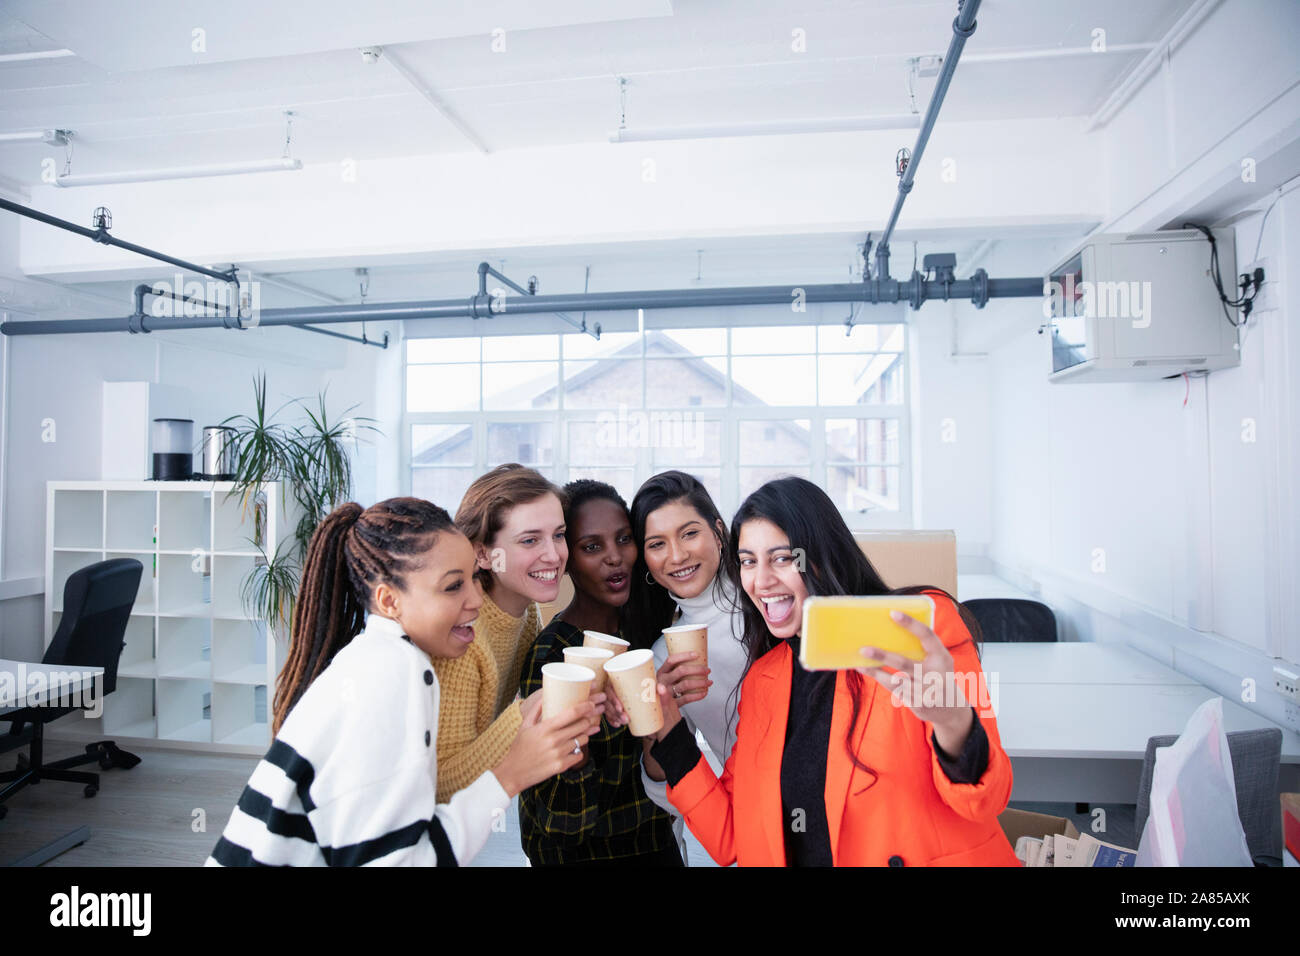 Businesswomen celebrating new office, taking selfie Stock Photo